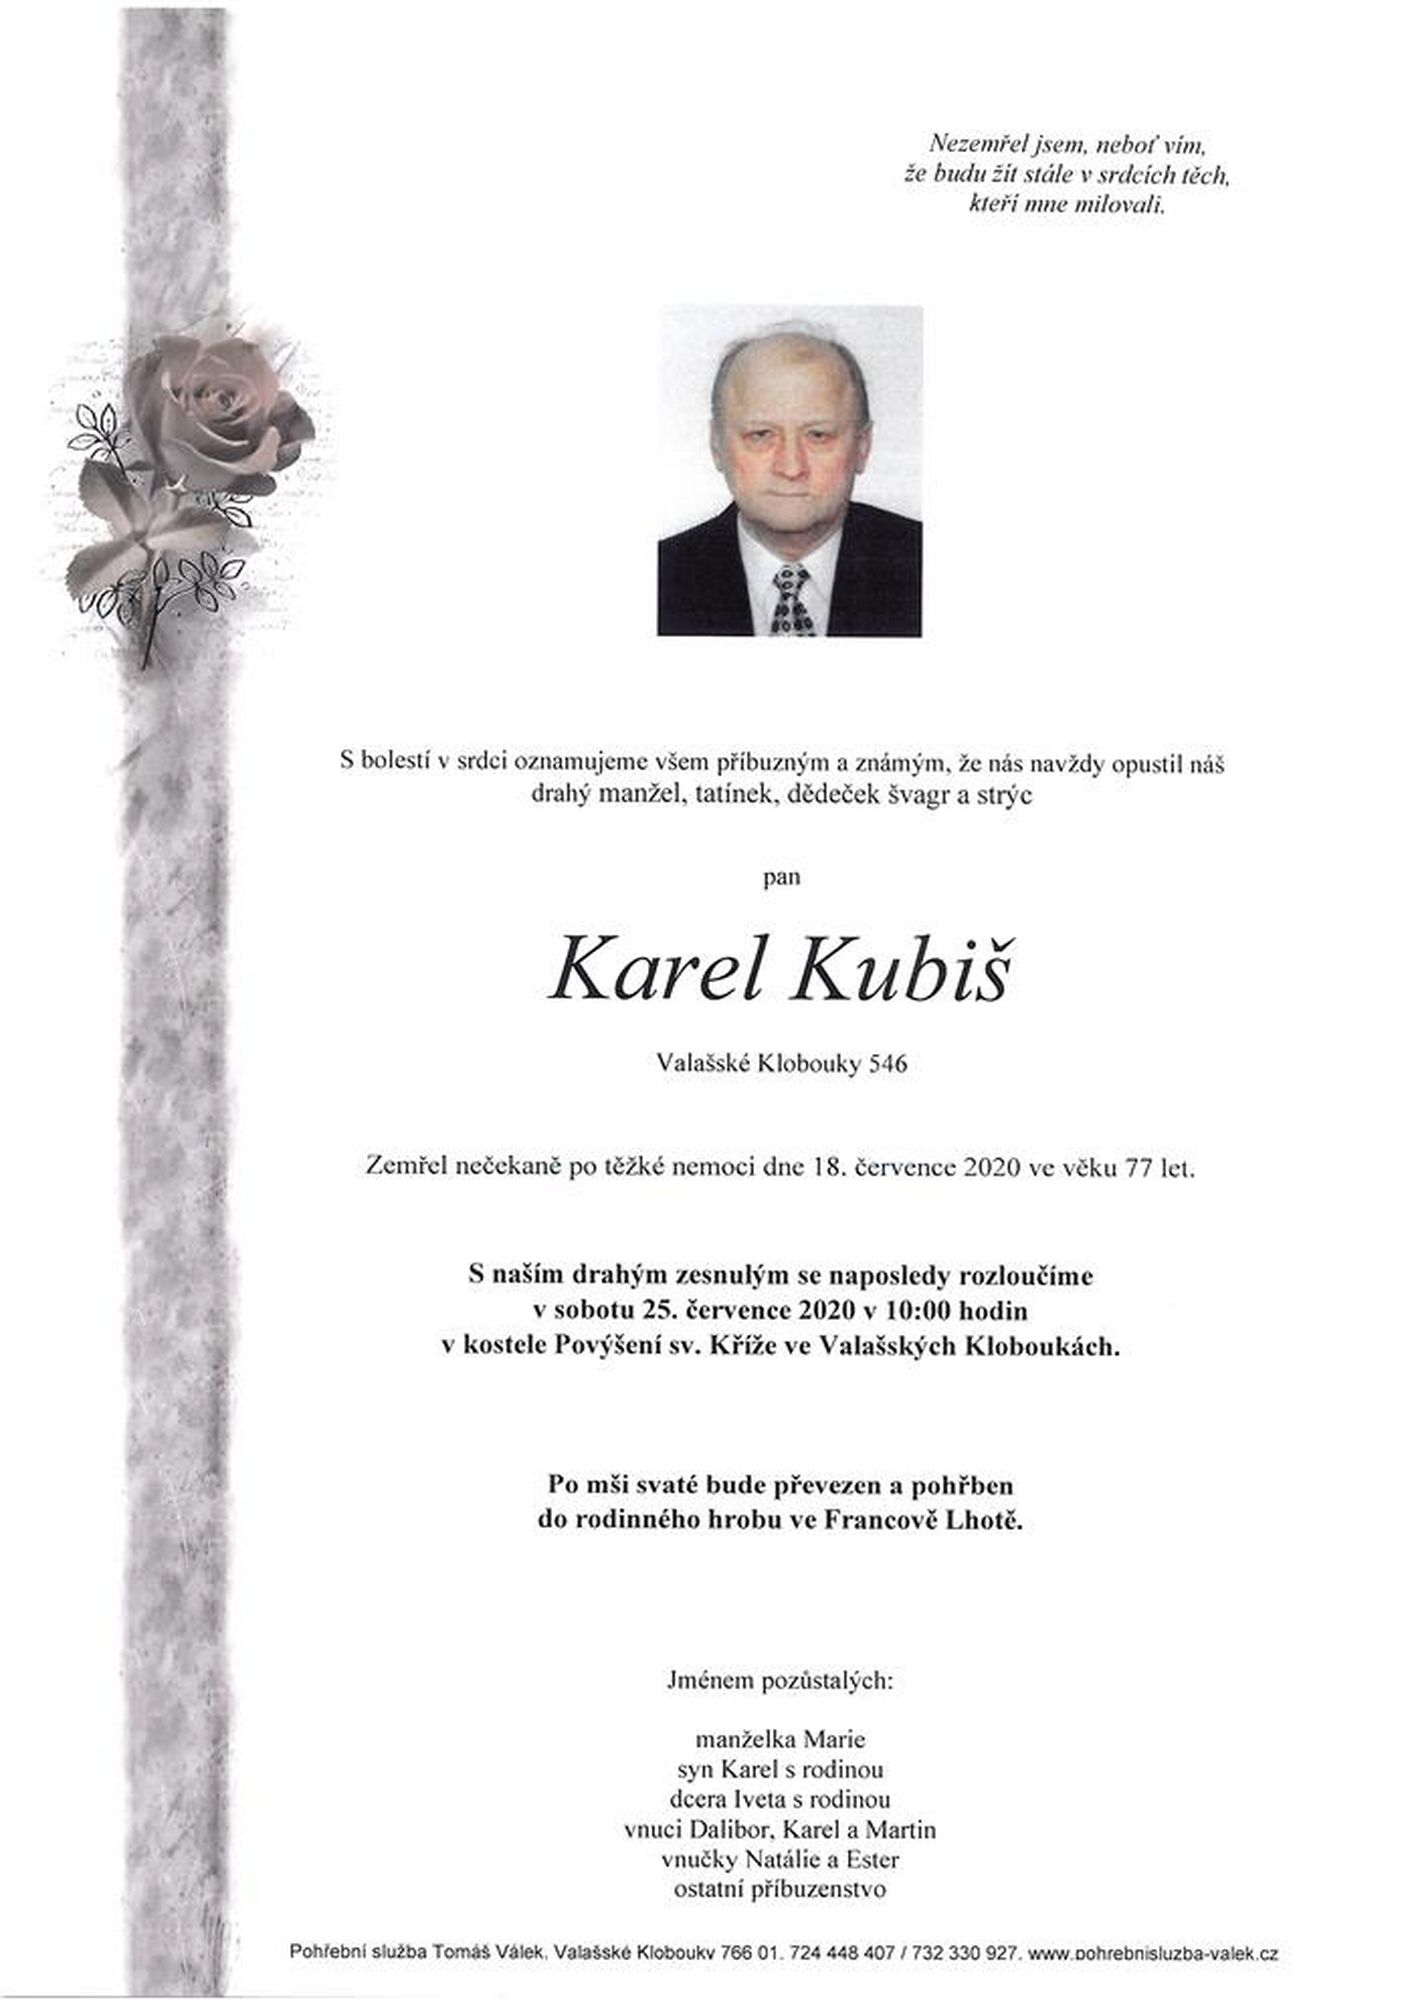 Karel Kubiš